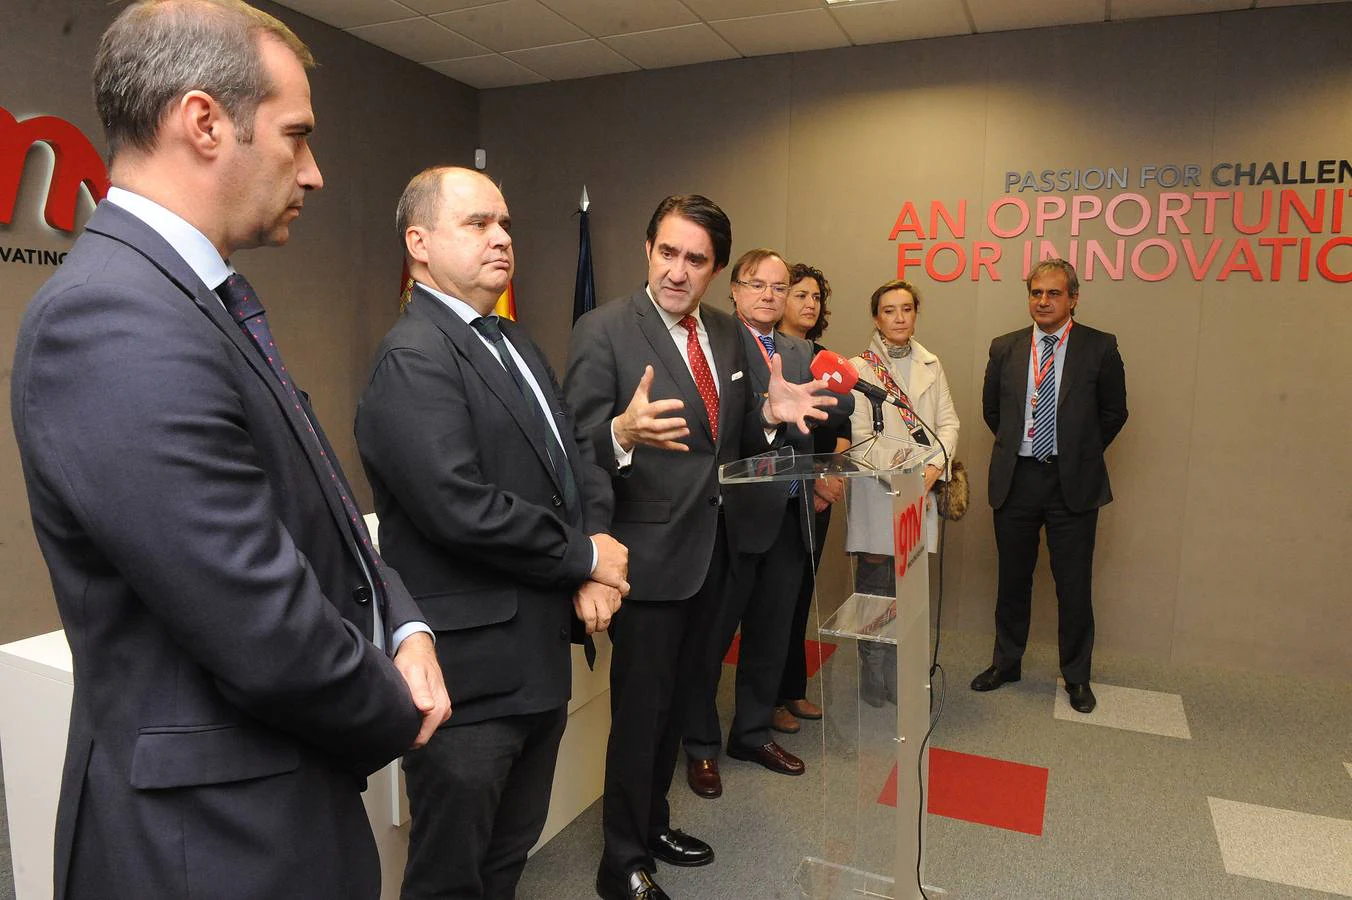 La inauguración ha contado con la visita del consejero de Fomento y Medio Ambiente de la Junta de Castilla y León, Juan Carlos Suárez-Quiñones